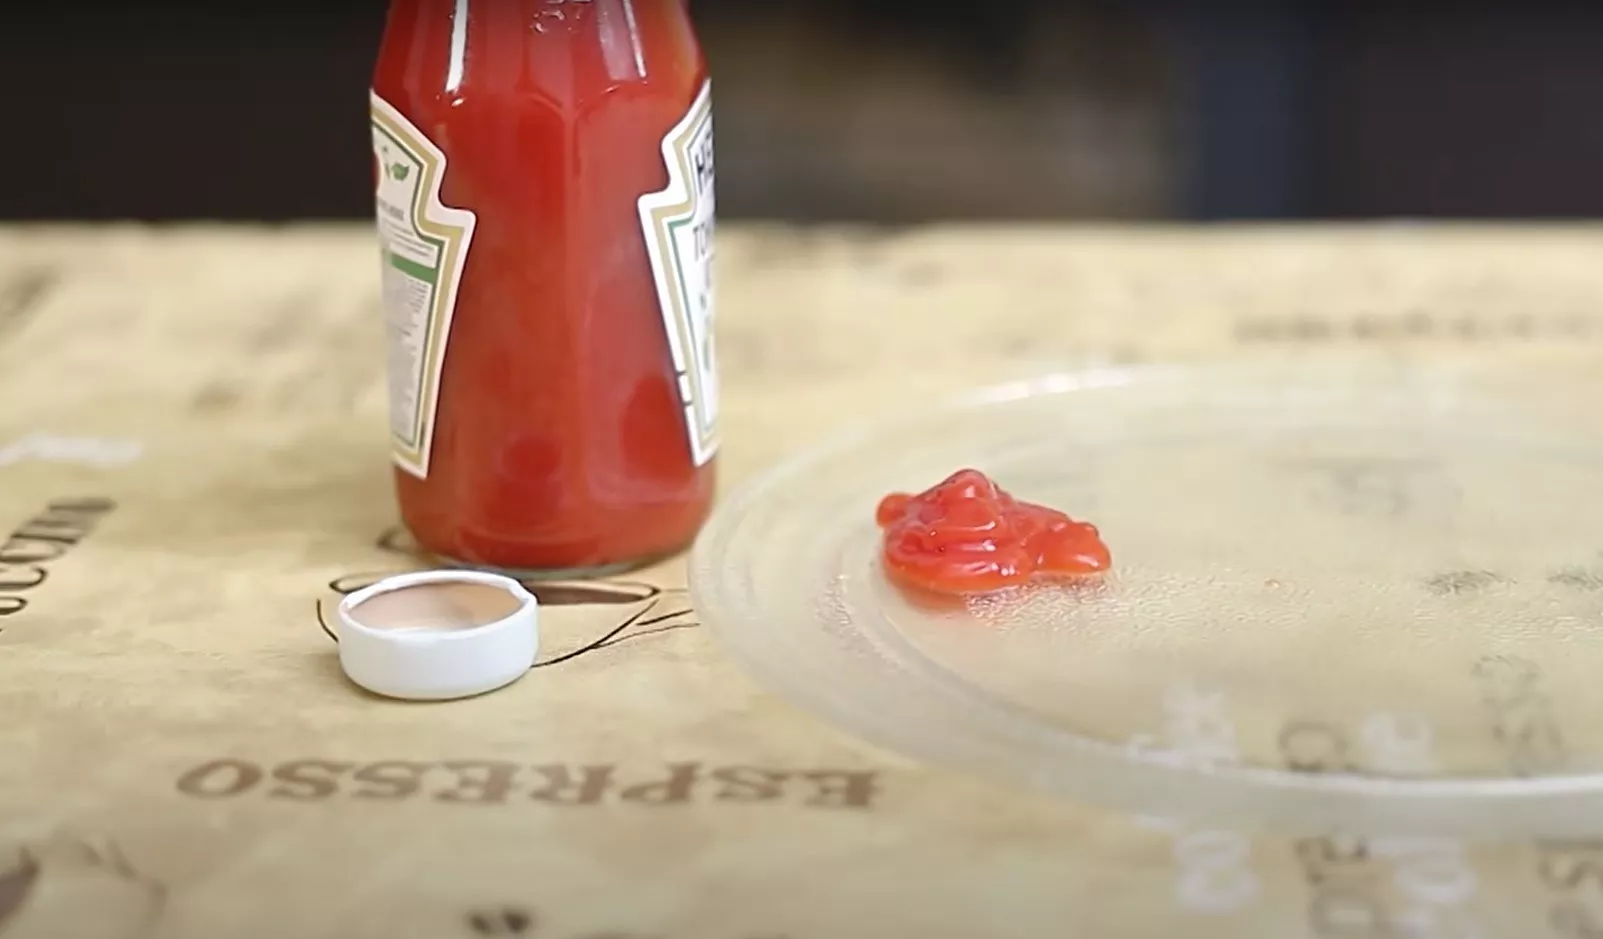 Як дістати кетчуп з банки. Фото: скріншот з YouTube/F.DIY